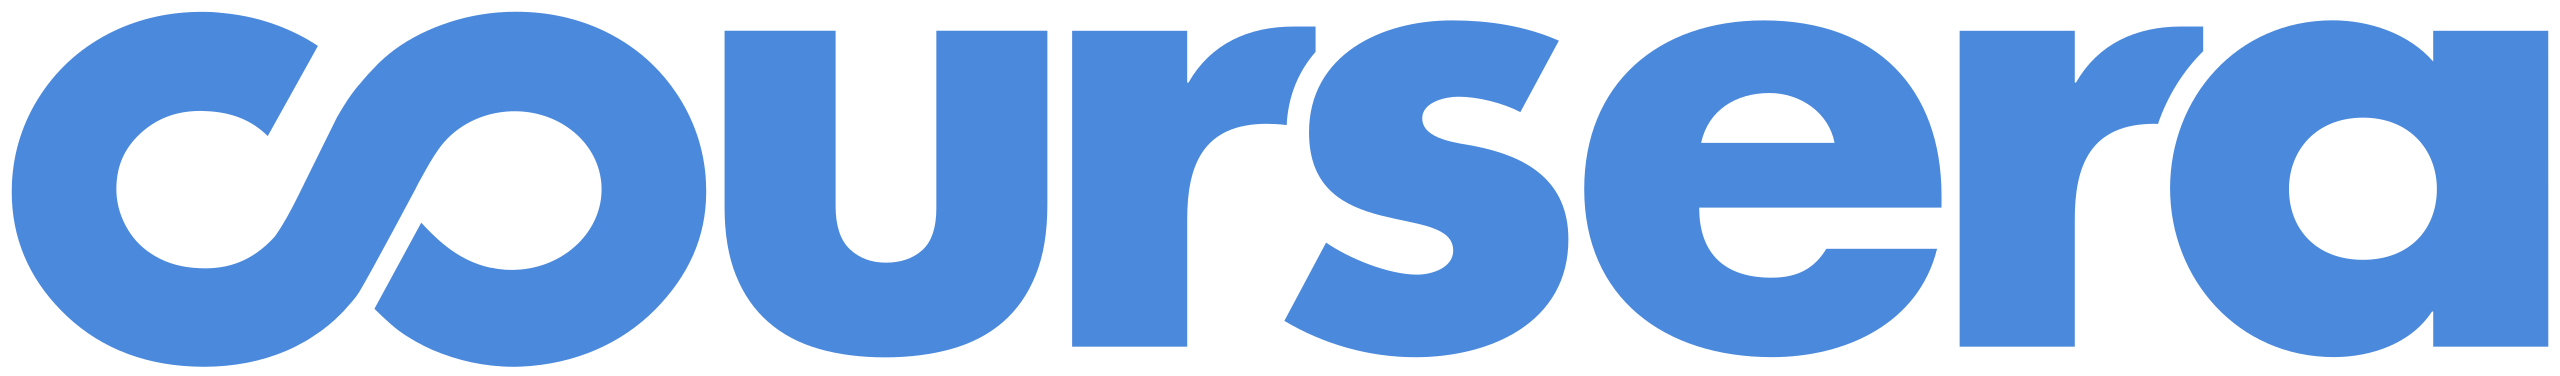 Coursera logo.svg